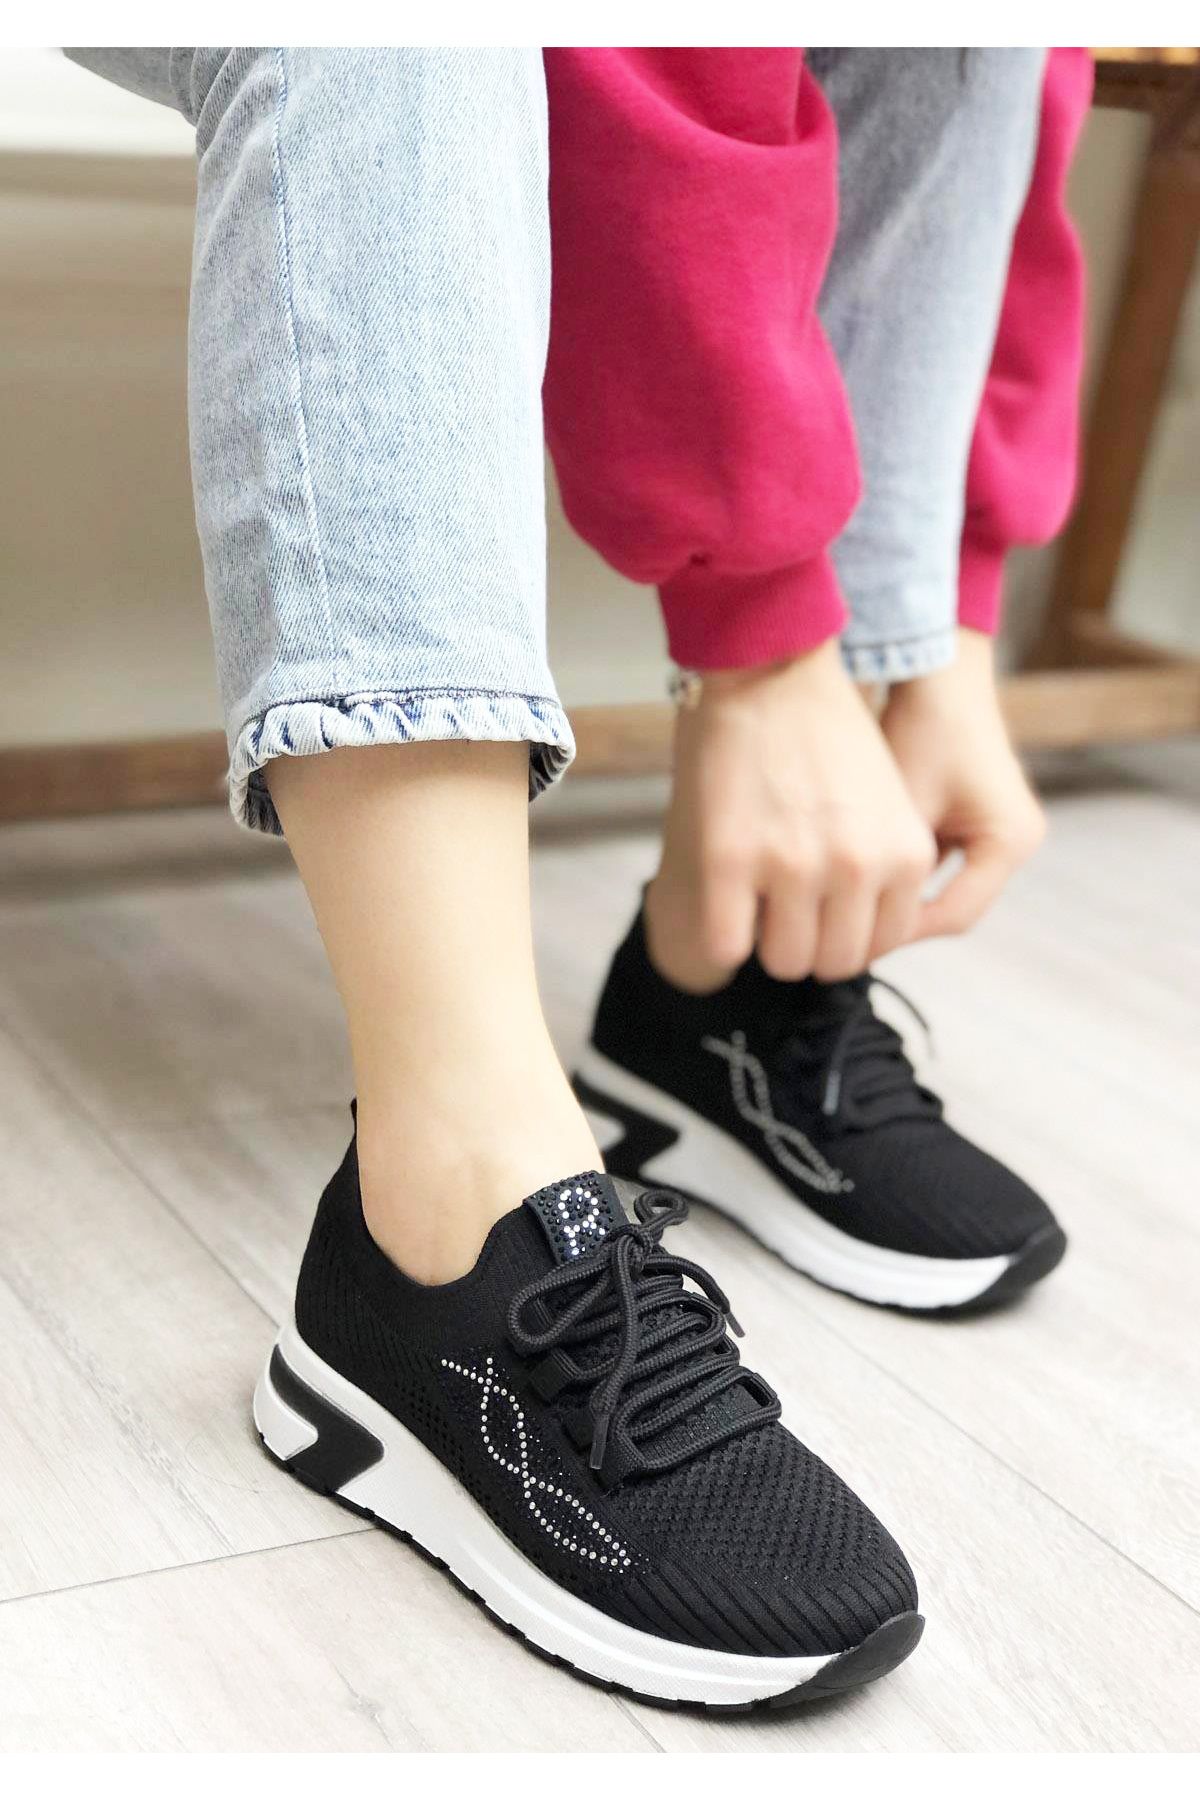 Afilli Kadın Siyah Kalın Beyaz Platform Taban Triko Taşlı Parlak Hafif Yürüyüş Günlük Sneaker Spor Ayakkabı